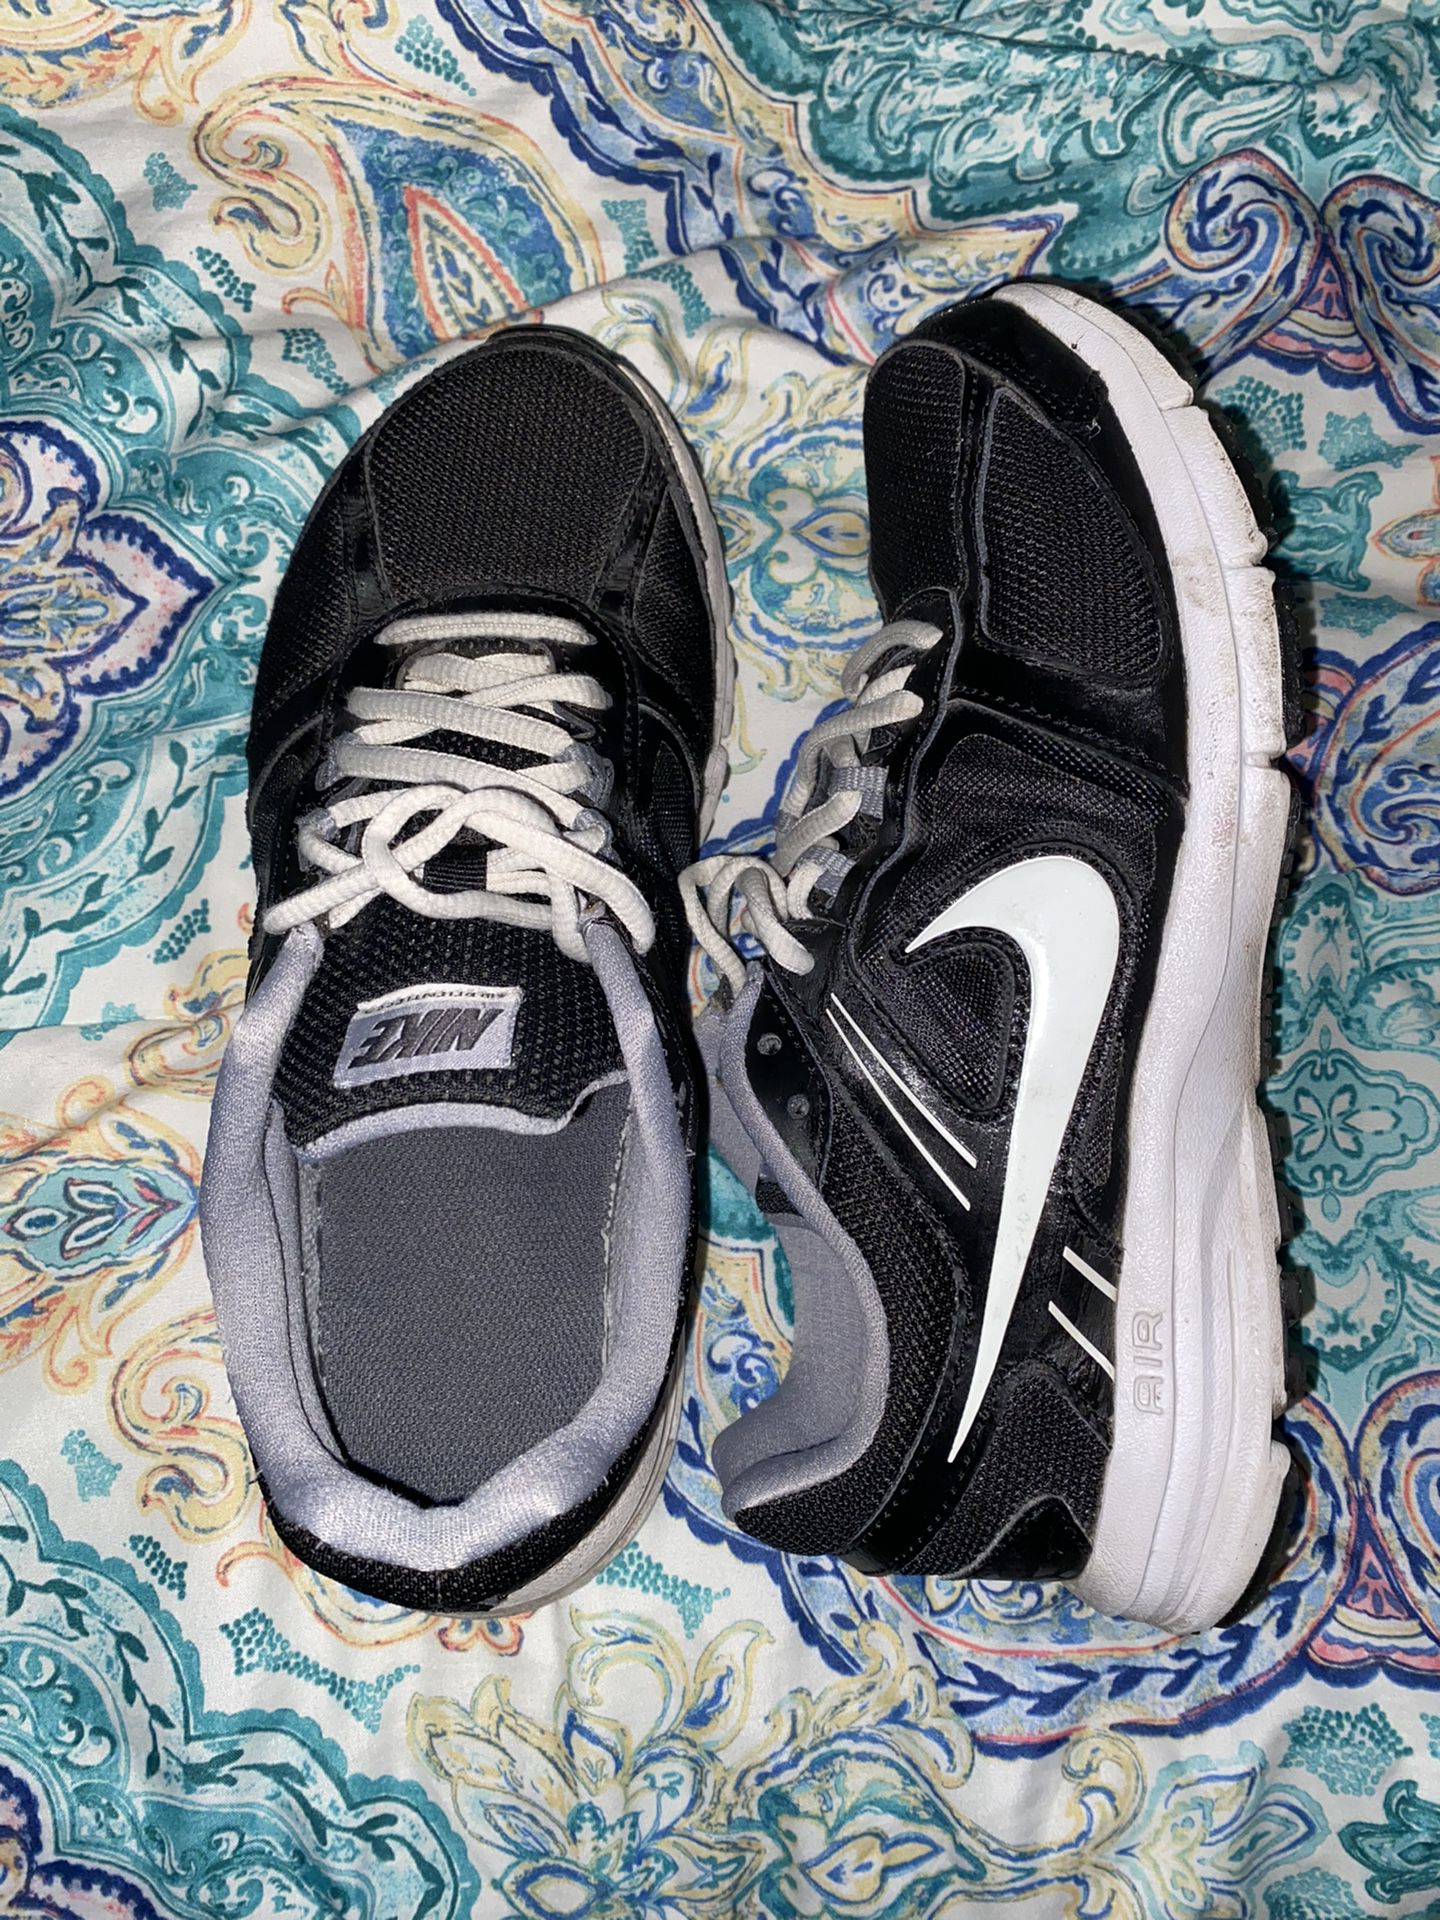 Women’s Nike running shoes